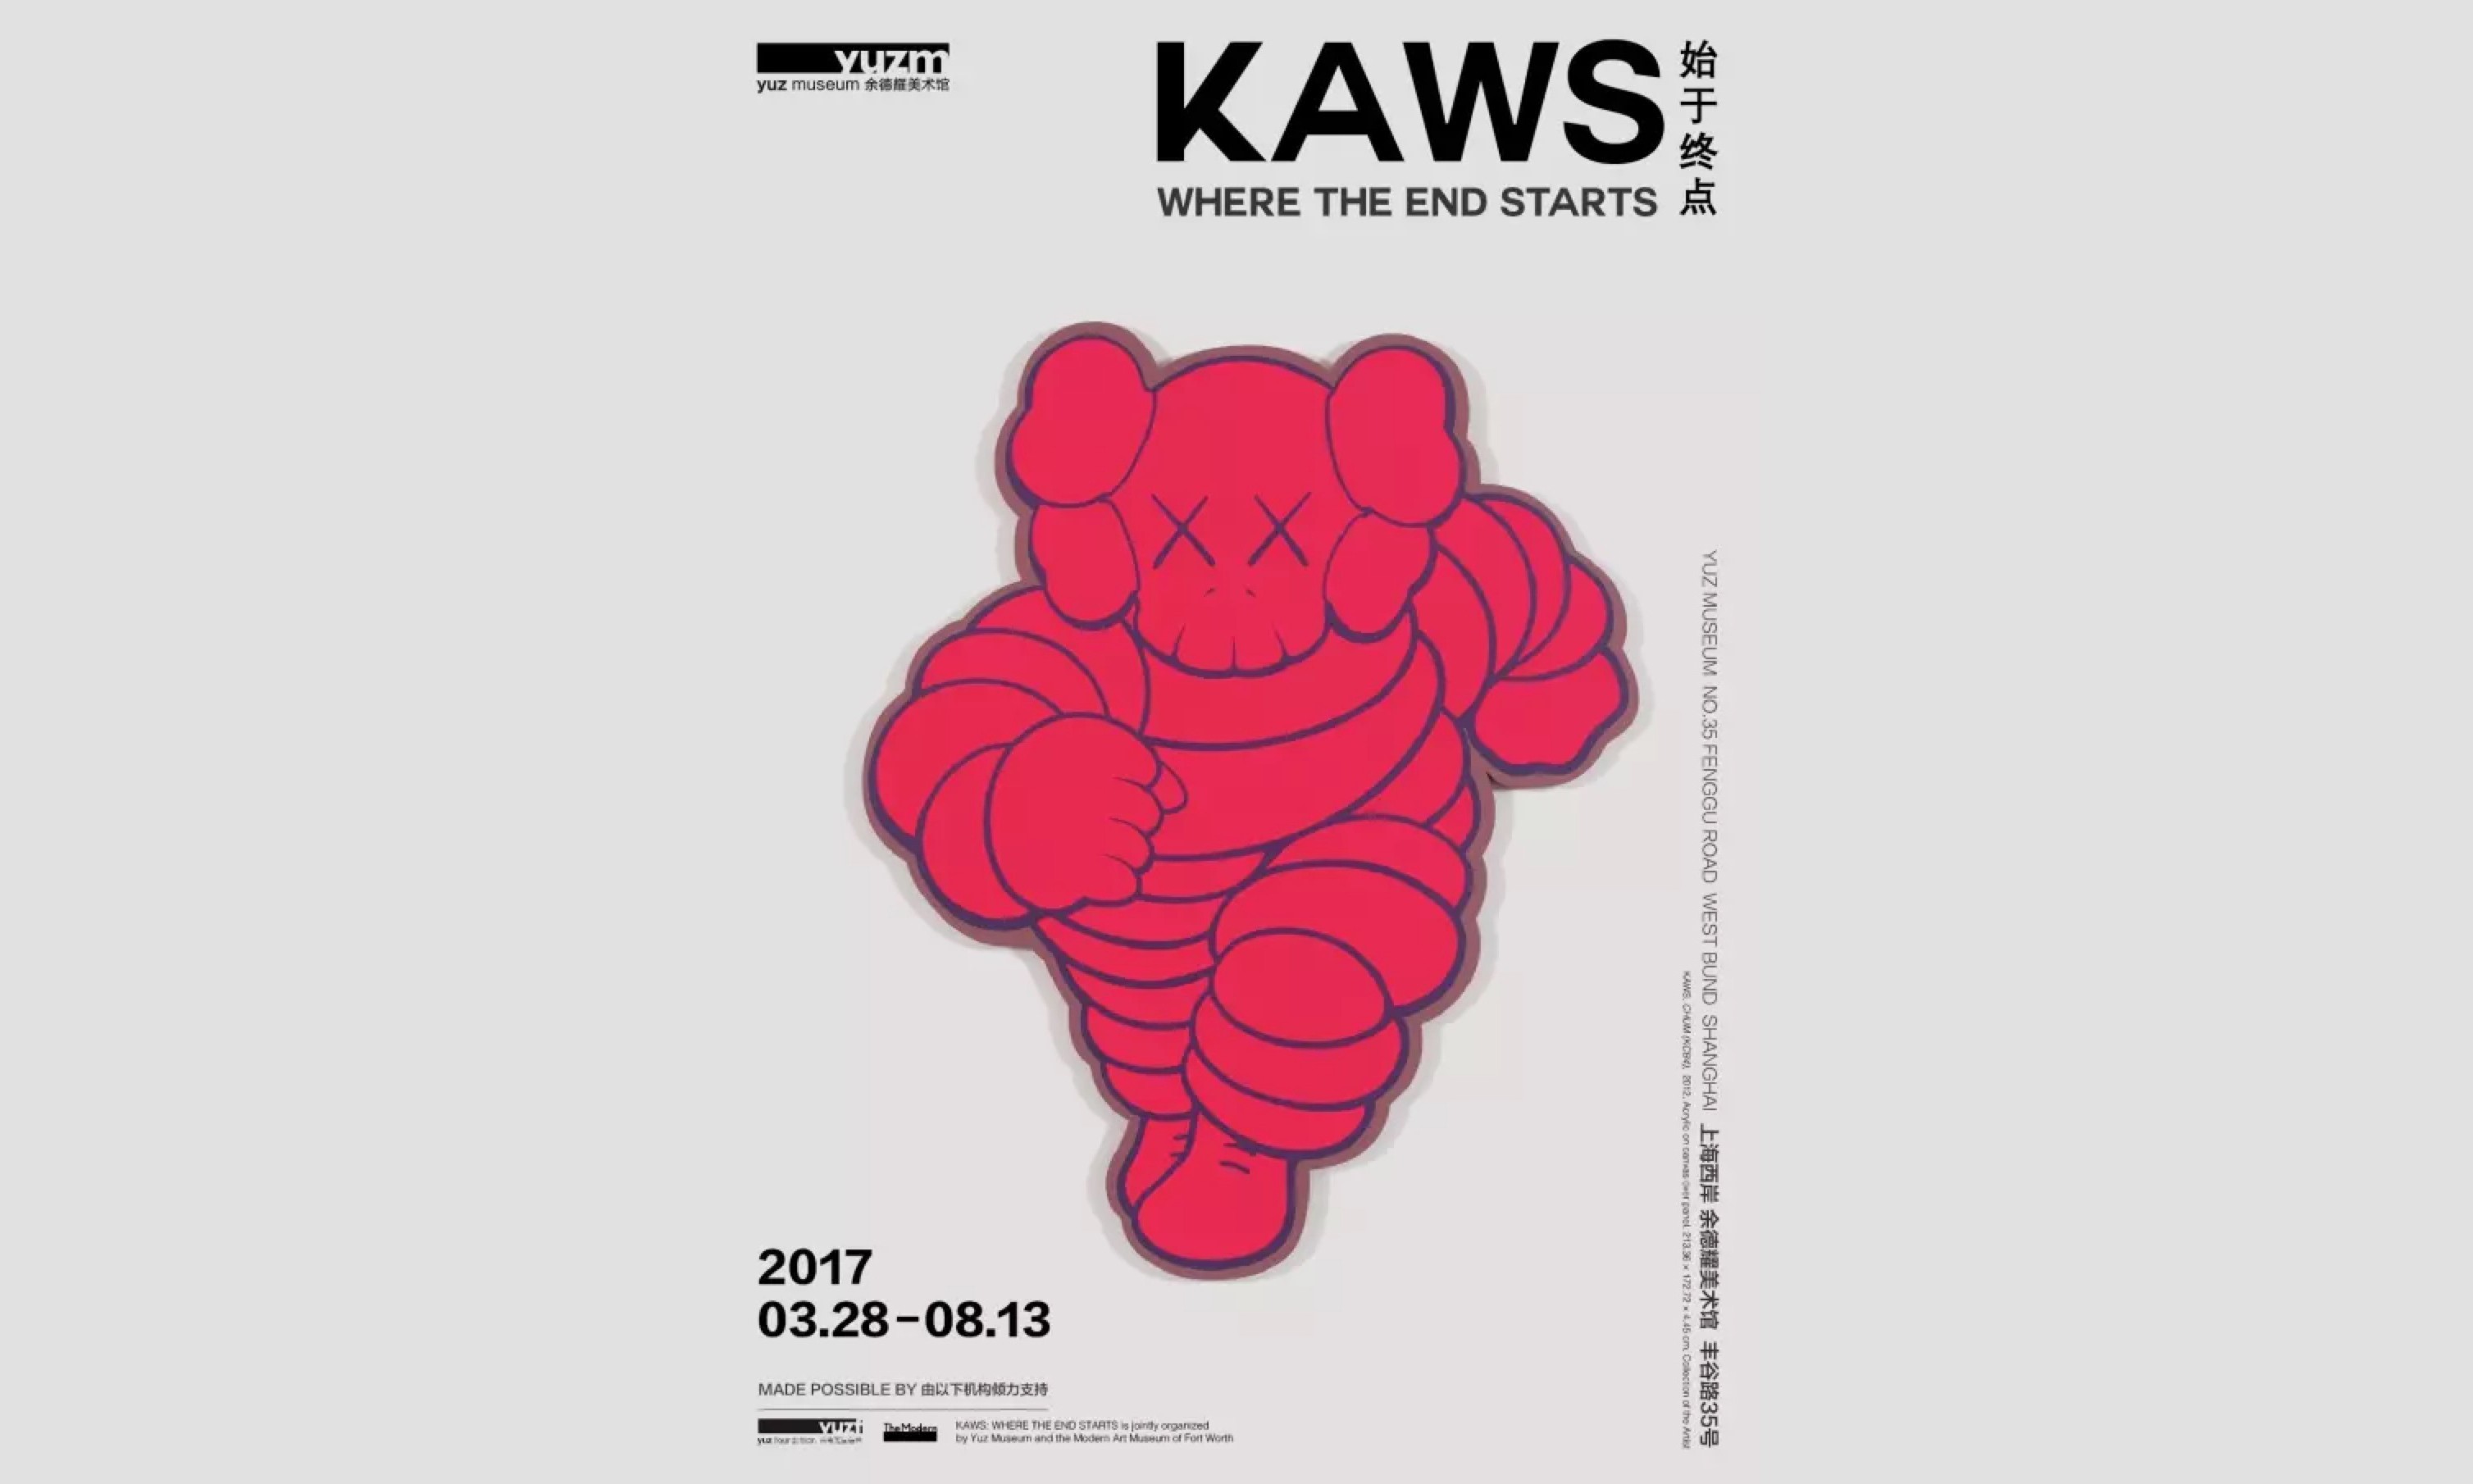 「KAWS：始于终点」巡展将于 3 月 28 日登陆上海余德耀美术馆